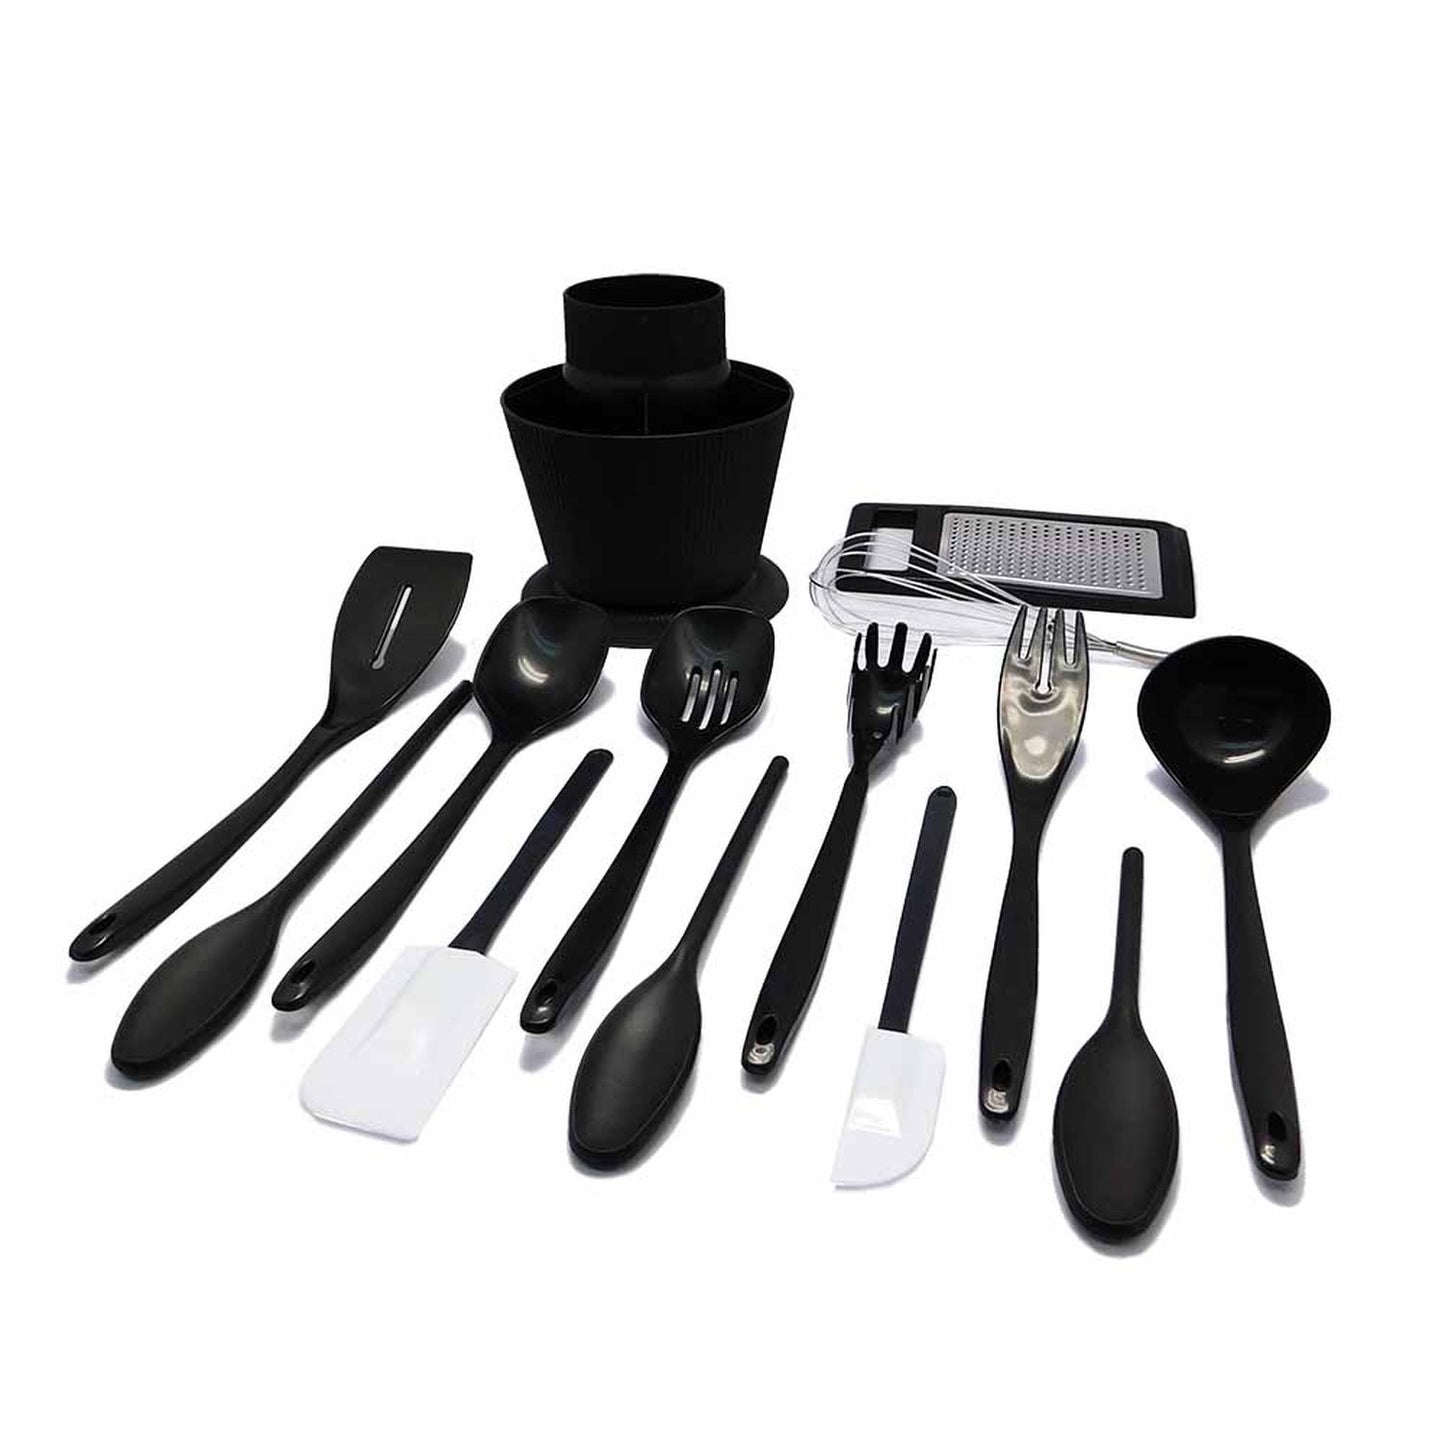 Set de 13 utensilios de cocina